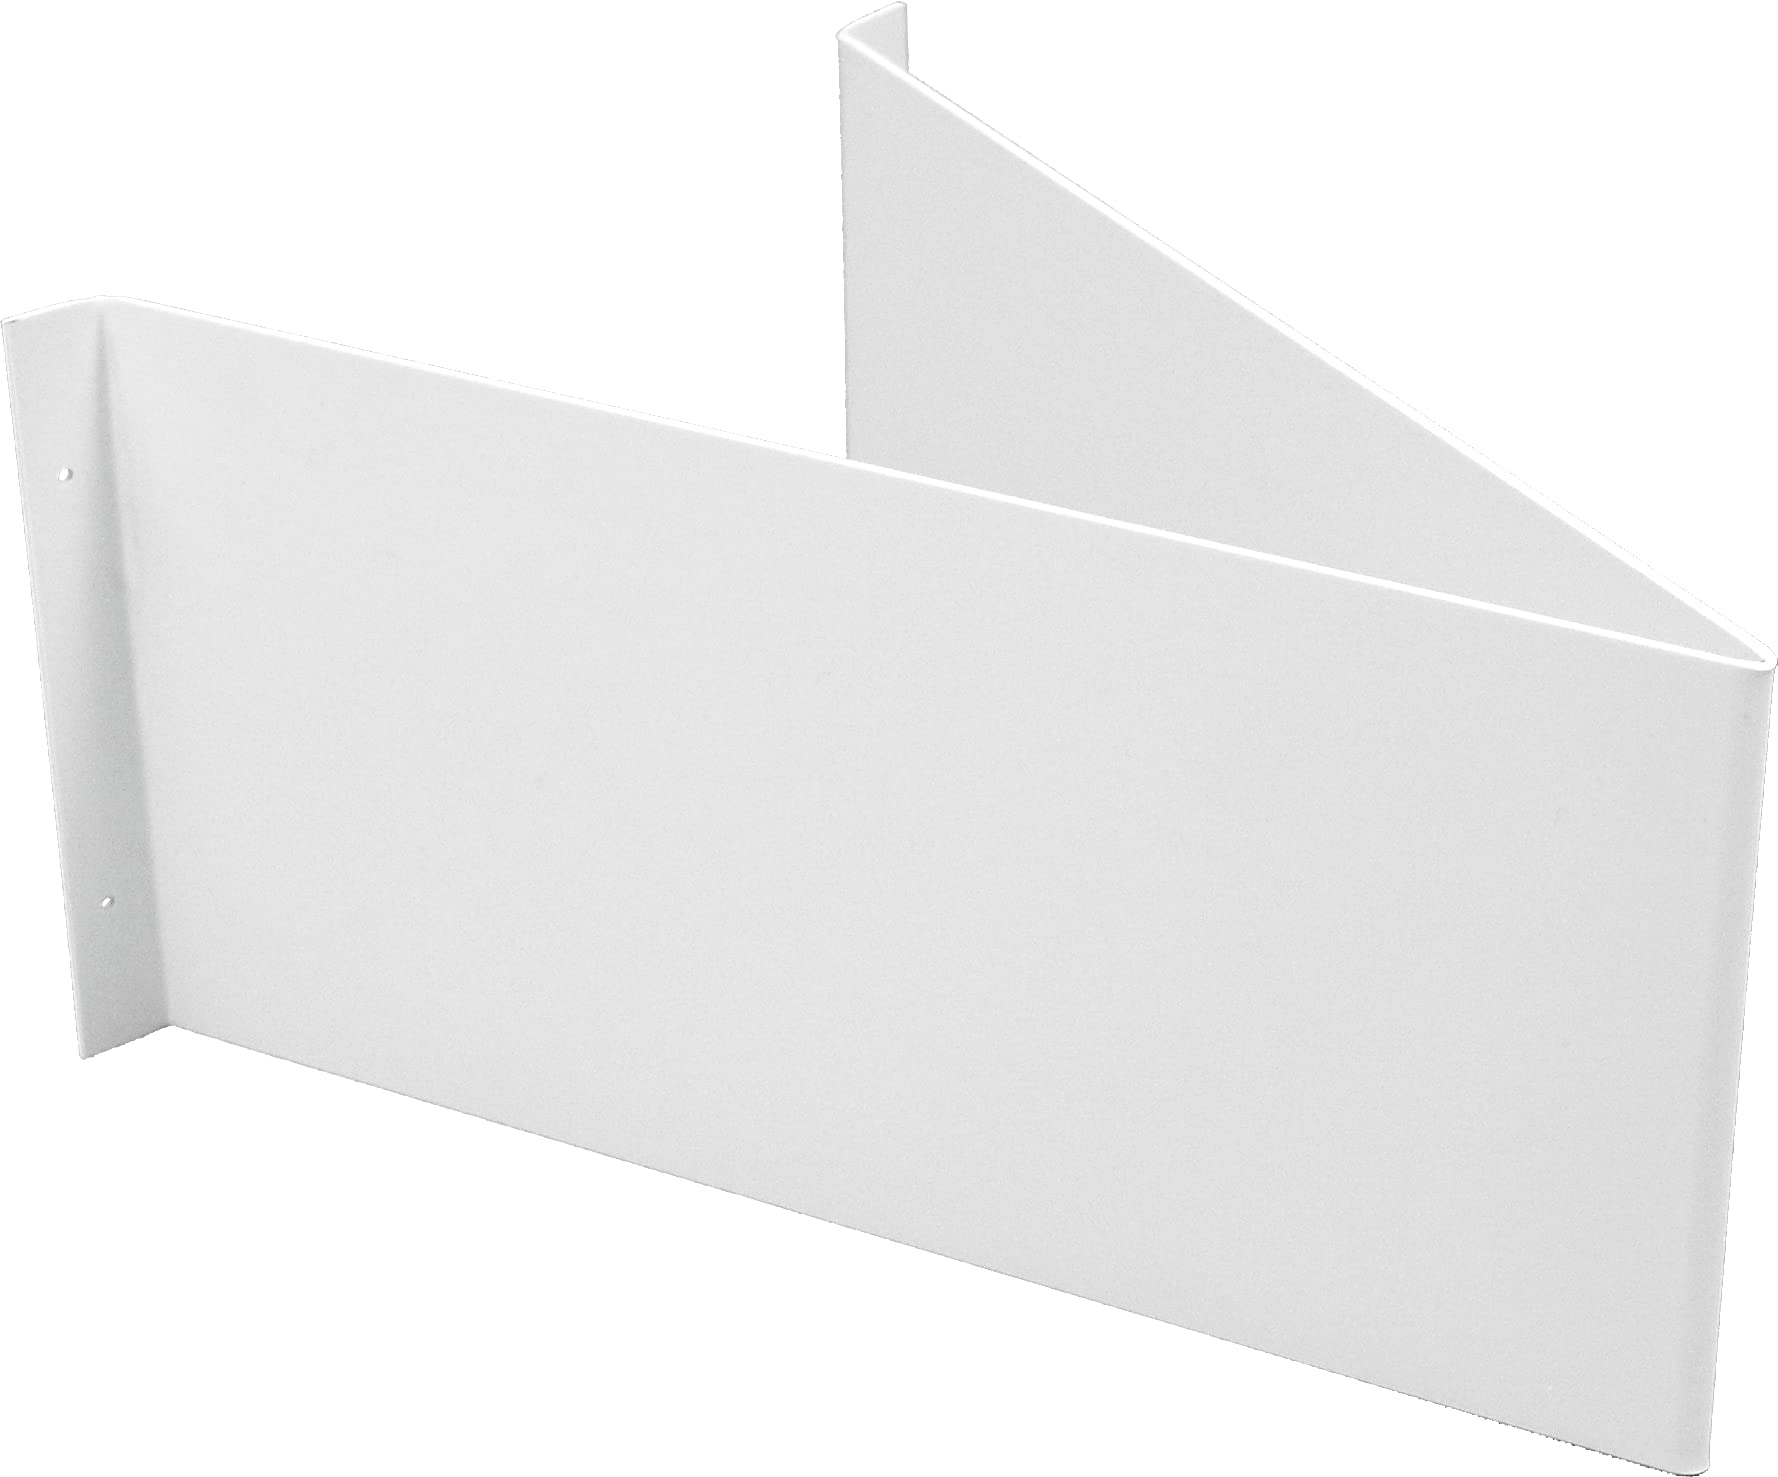 Winkelschild blanko zur Wandmontage, Alu, 297x148 mm